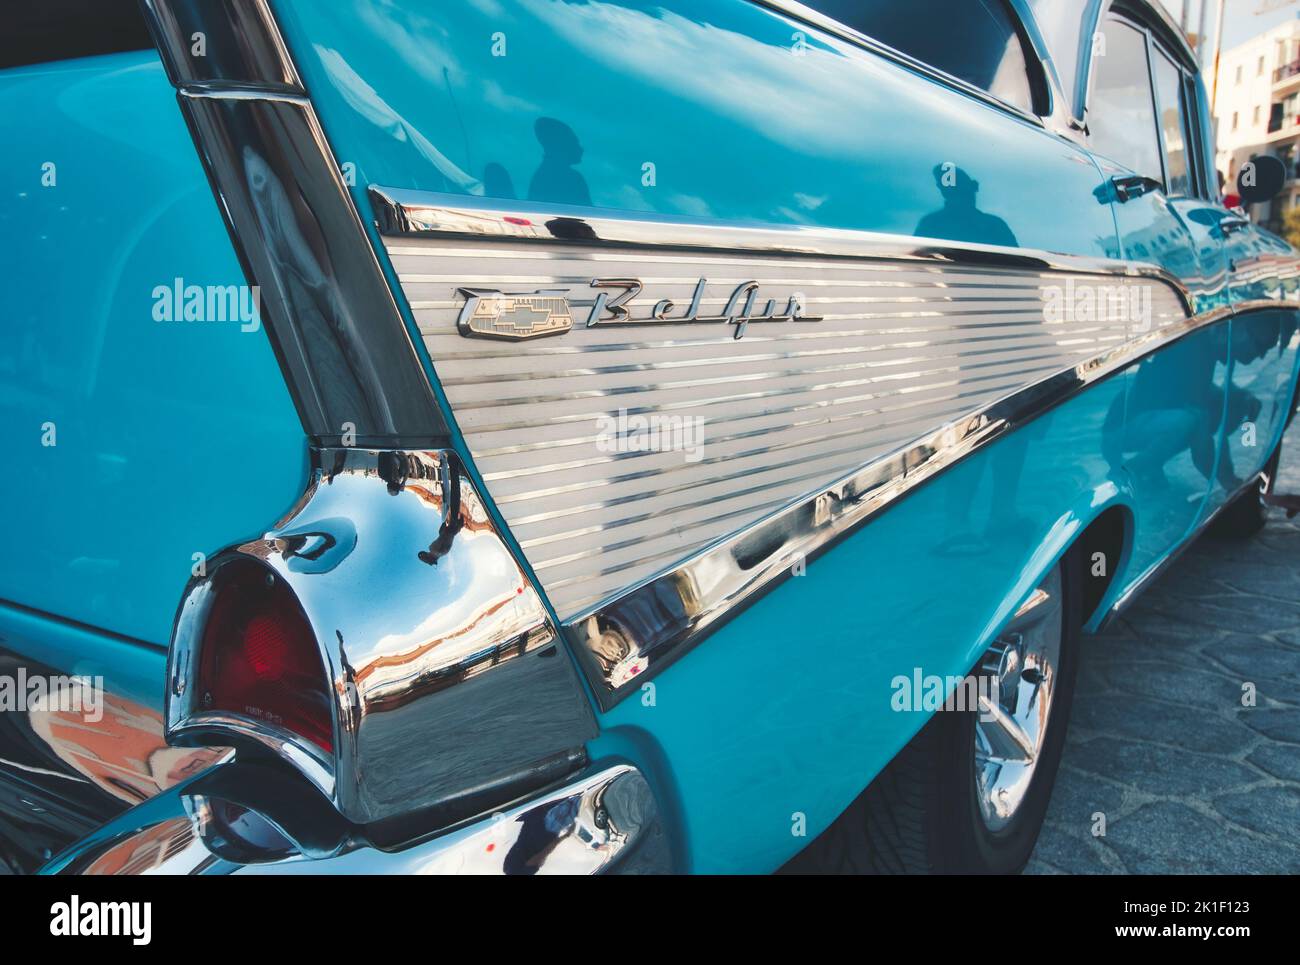 Nahaufnahme der Rückseite eines aquamarinblauen Chevrolet Bel Air aus dem Jahr 1957 mit Stoßfängerschutz Stockfoto